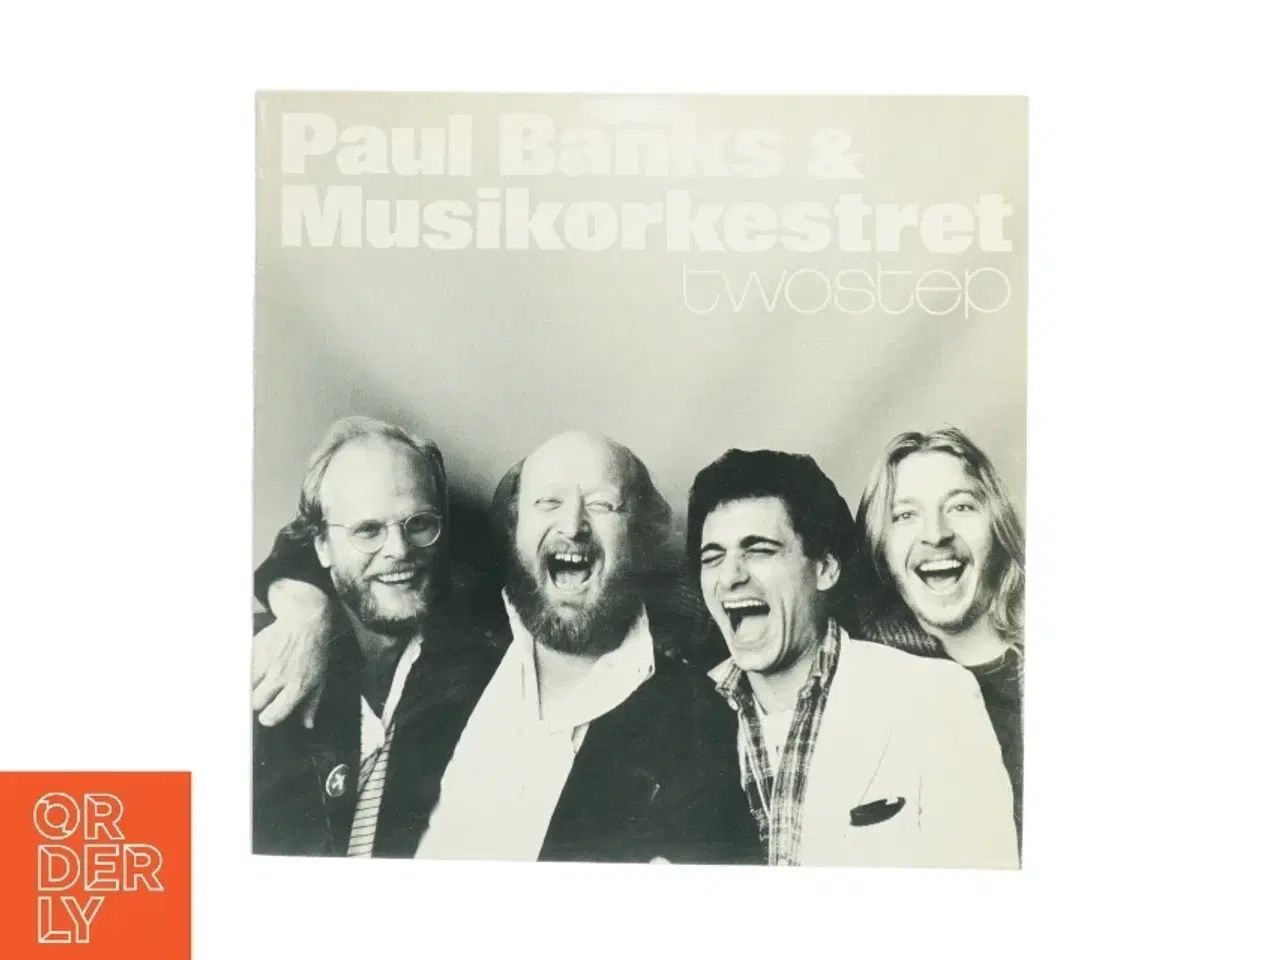 Billede 1 - Paul Banks & Musikkorkestret - Twostep LP fra Hofnar Records (str. 31 x 31 cm)